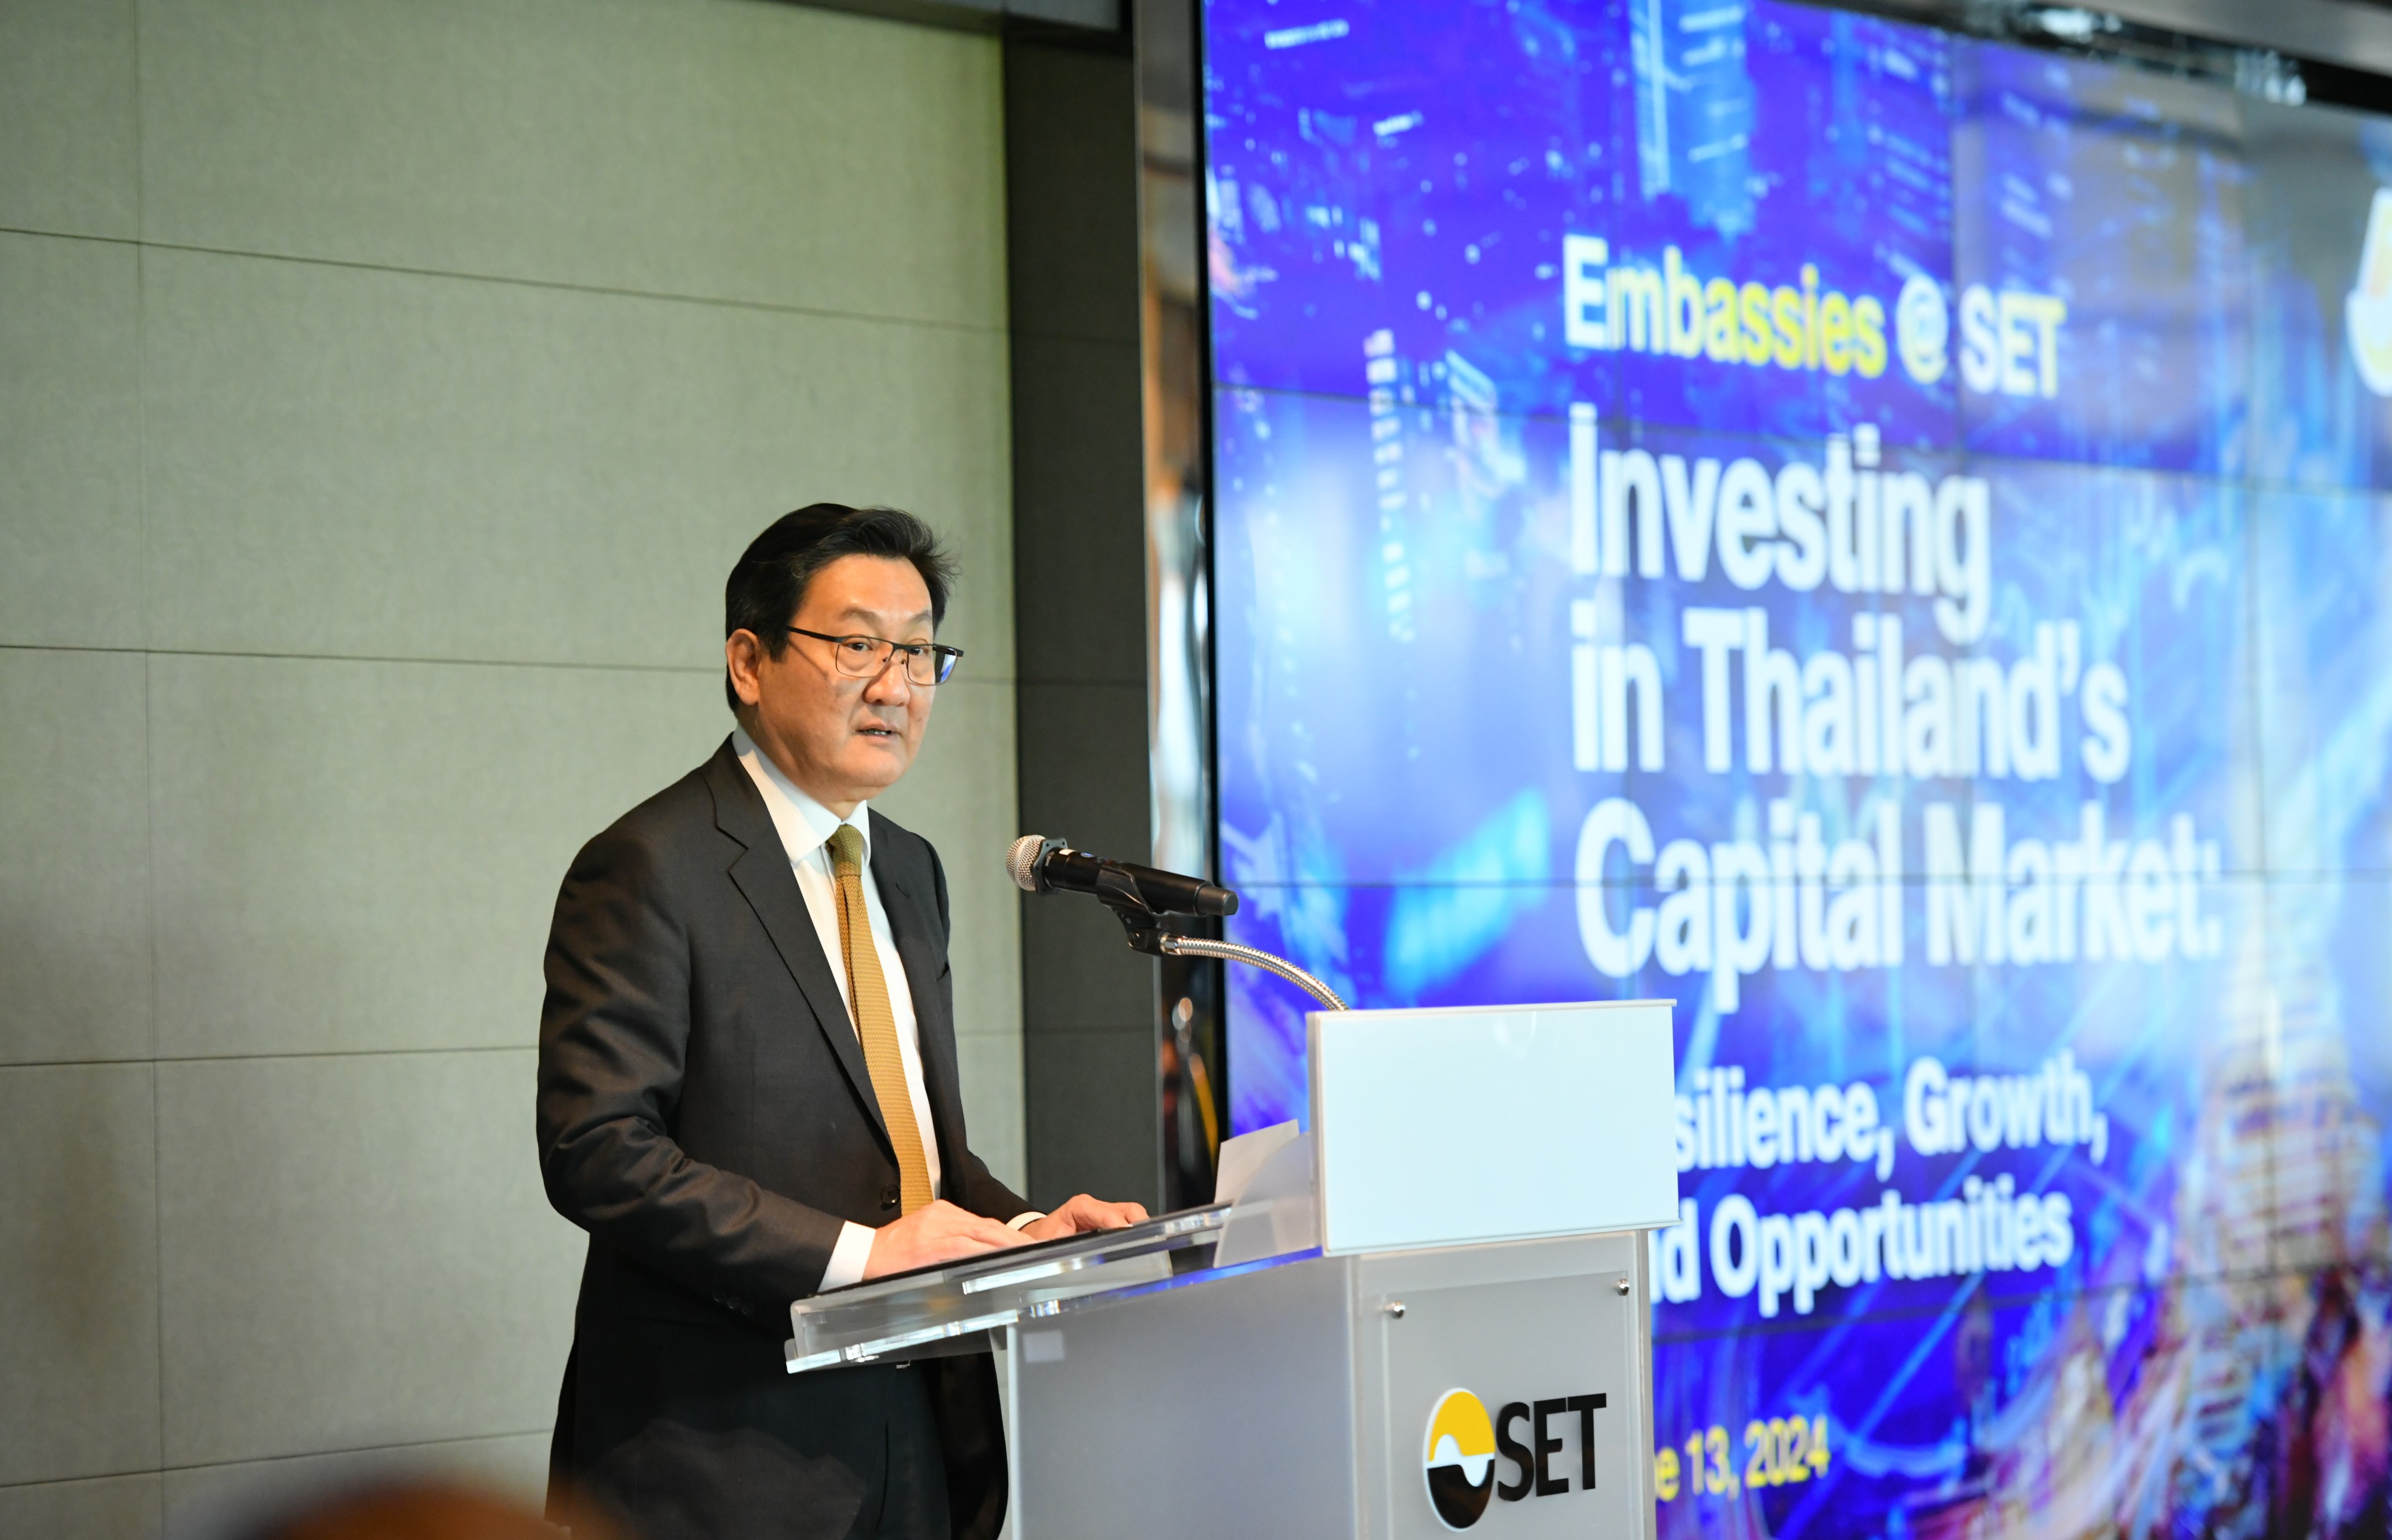 ตลาดหลักทรัพย์ฯ เชิญสถานทูต 29 ประเทศ รับฟังศักยภาพและความแข็งแกร่งตลาดทุนและประเทศไทย